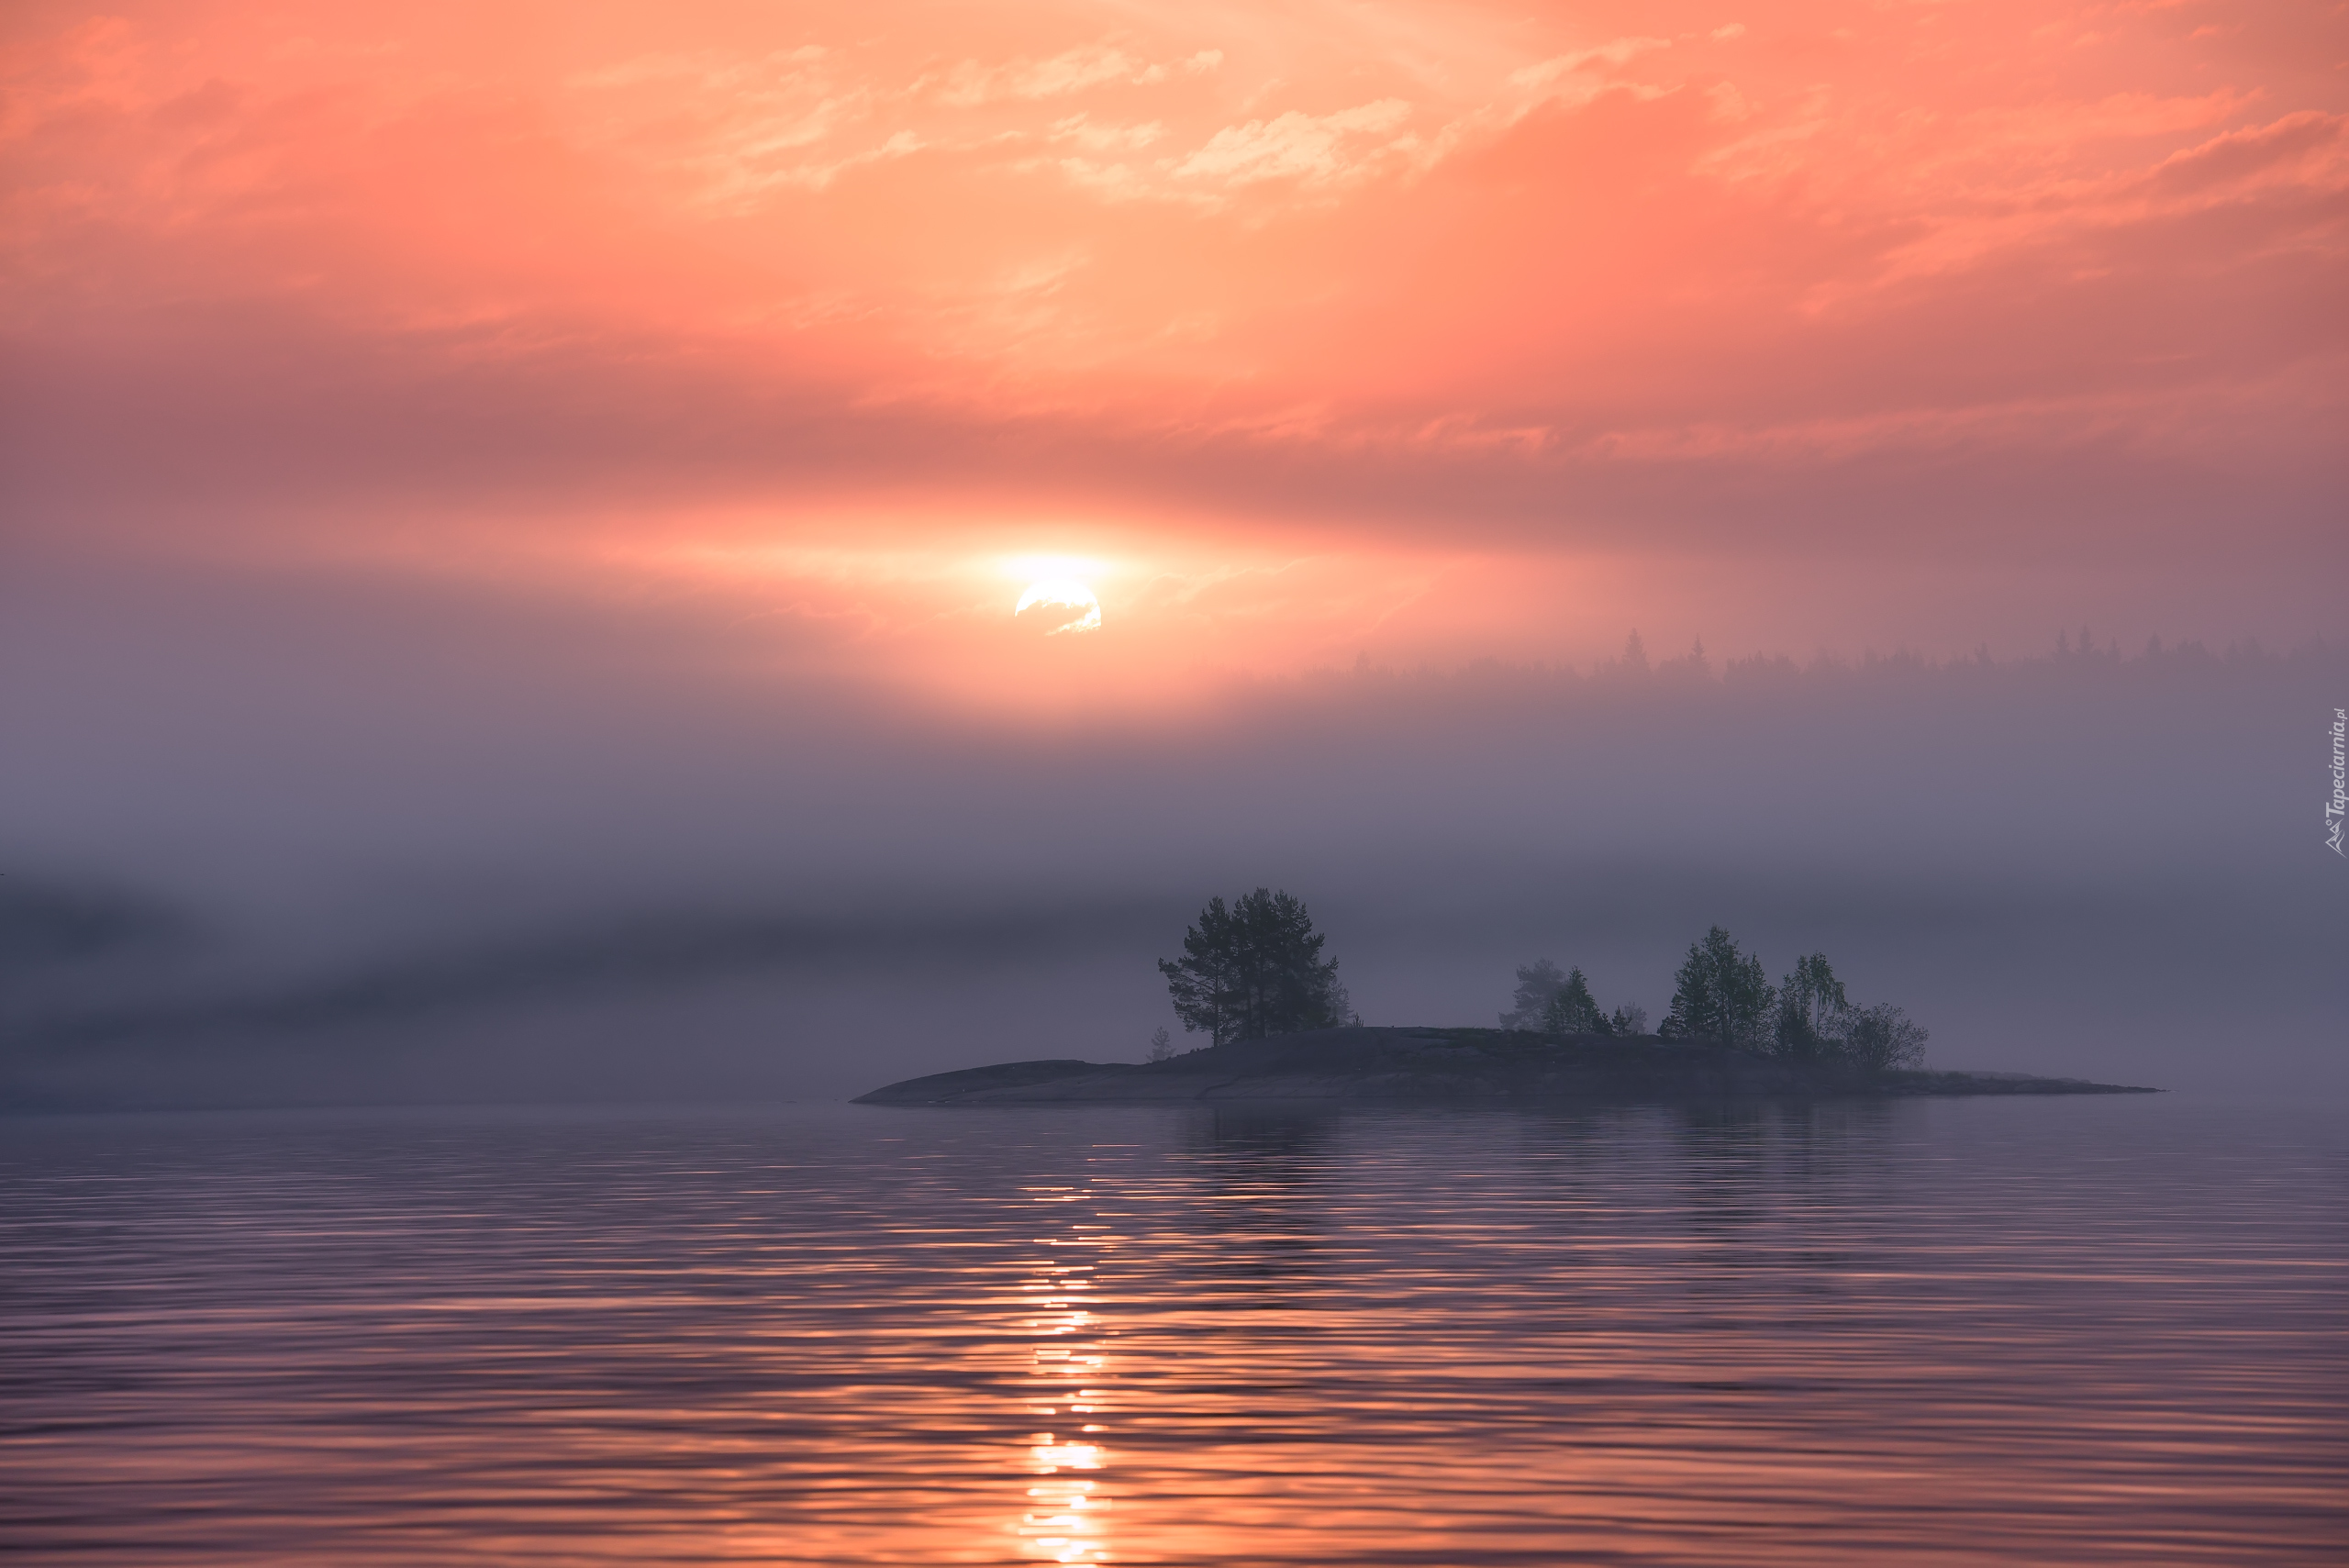 Jezioro Ładoga, Wyspa, Zachód słońca, Drzewa, Karelia, Rosja